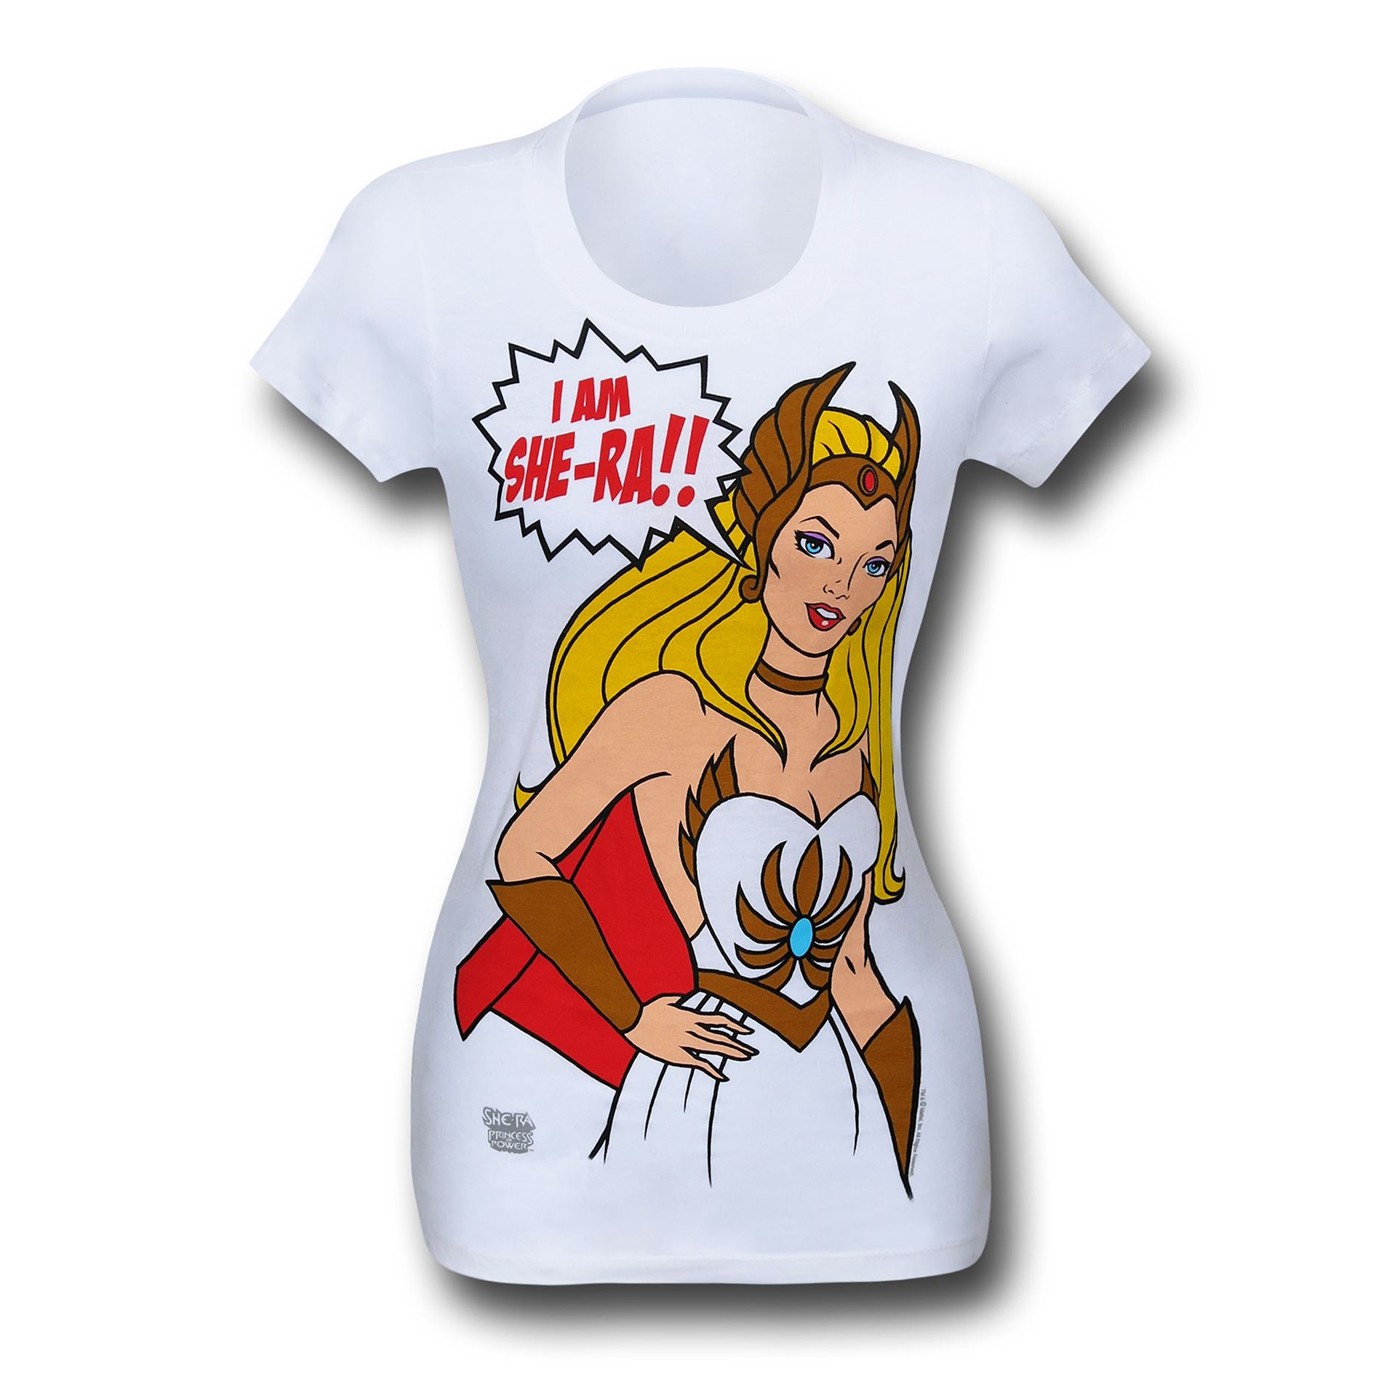 She-Ra I Am Women's T-Shirt